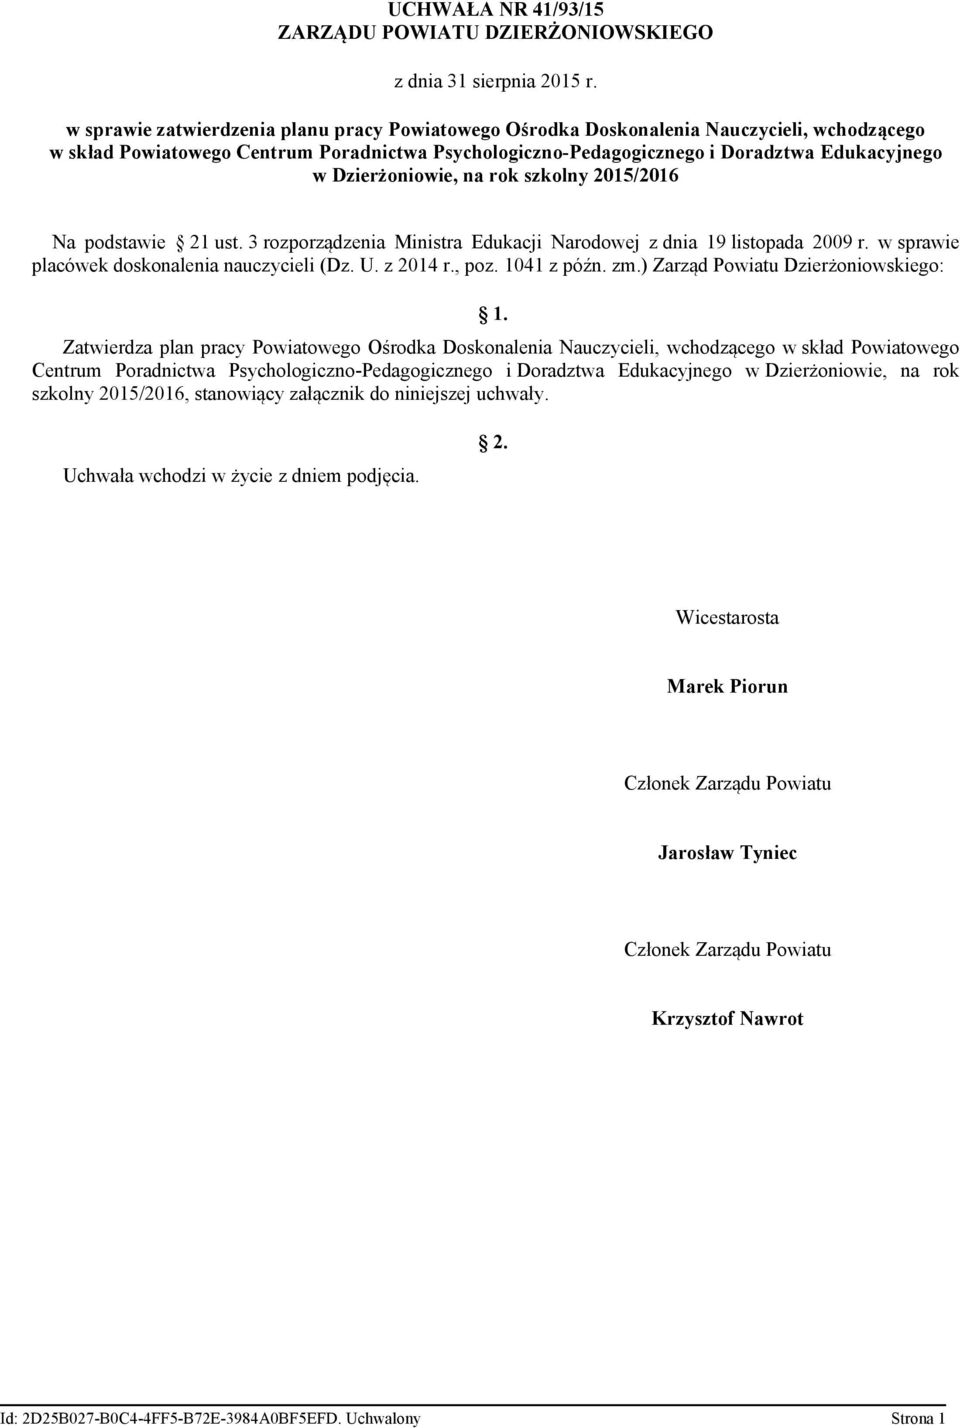 Dzierżoniowie, na Na podstawie 21 ust. 3 rozporządzenia Ministra Edukacji Narodowej z dnia 19 listopada 2009 r. w sprawie placówek doskonalenia nauczycieli (Dz. U. z 2014 r., poz. 1041 z późn. zm.